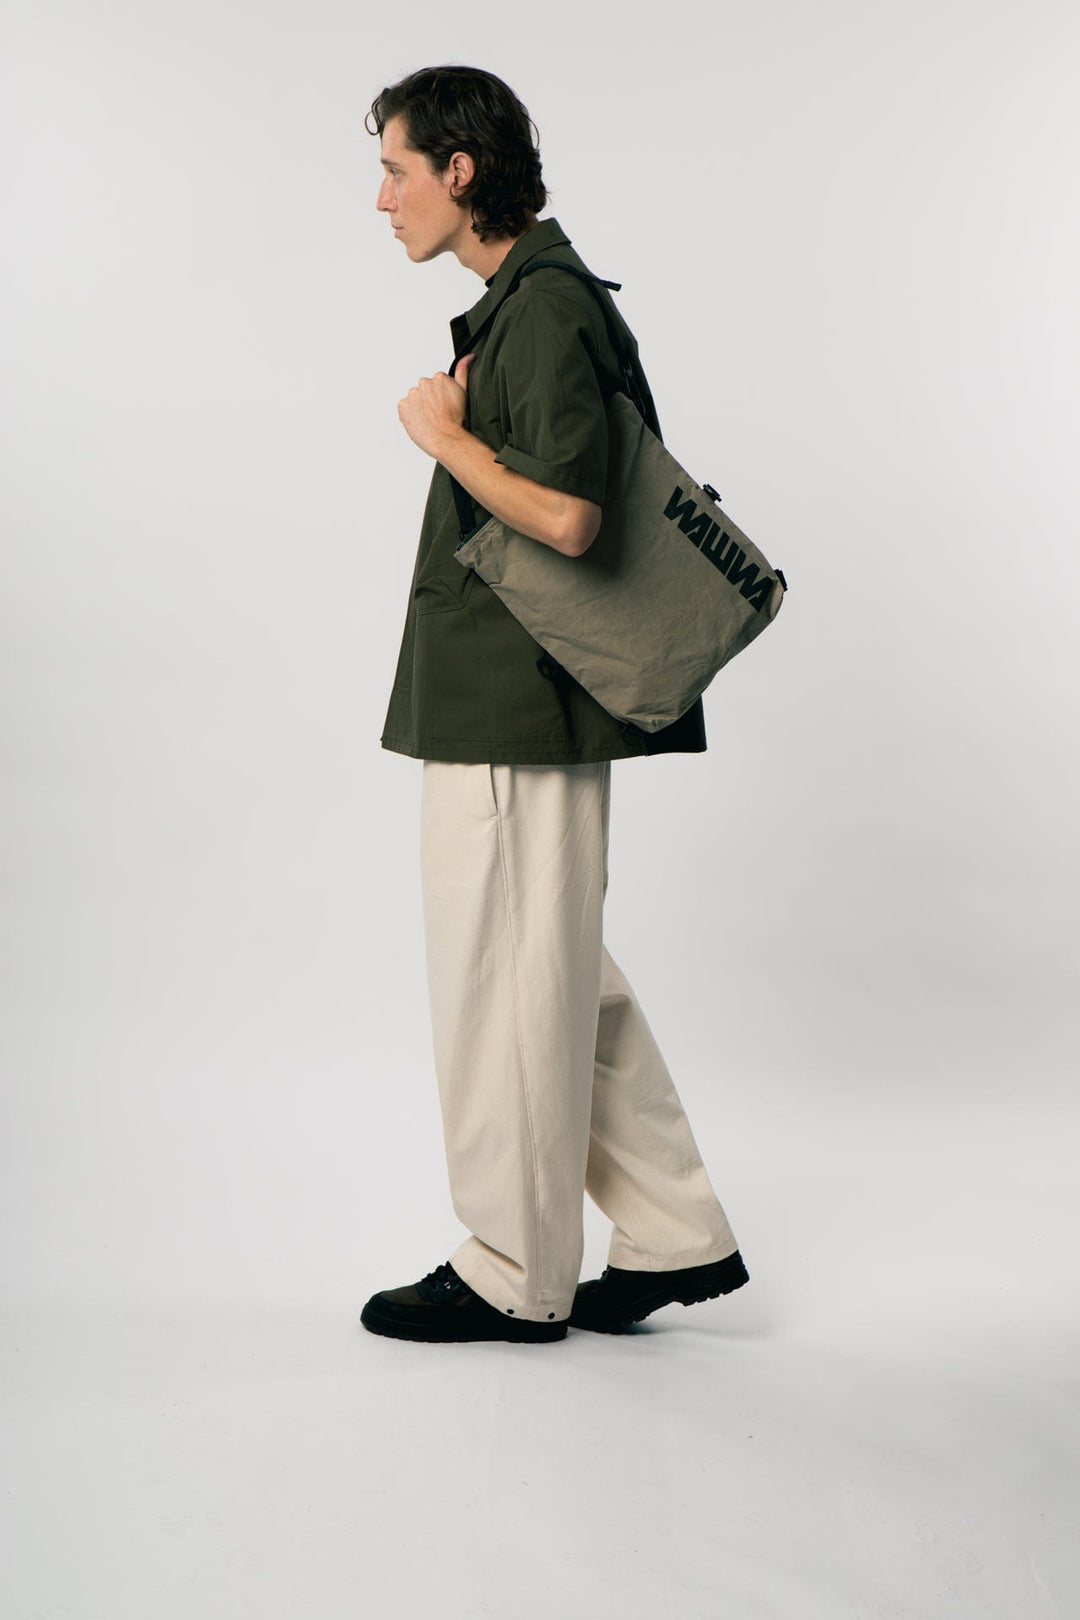 Kartis Extendable Messenger Bag